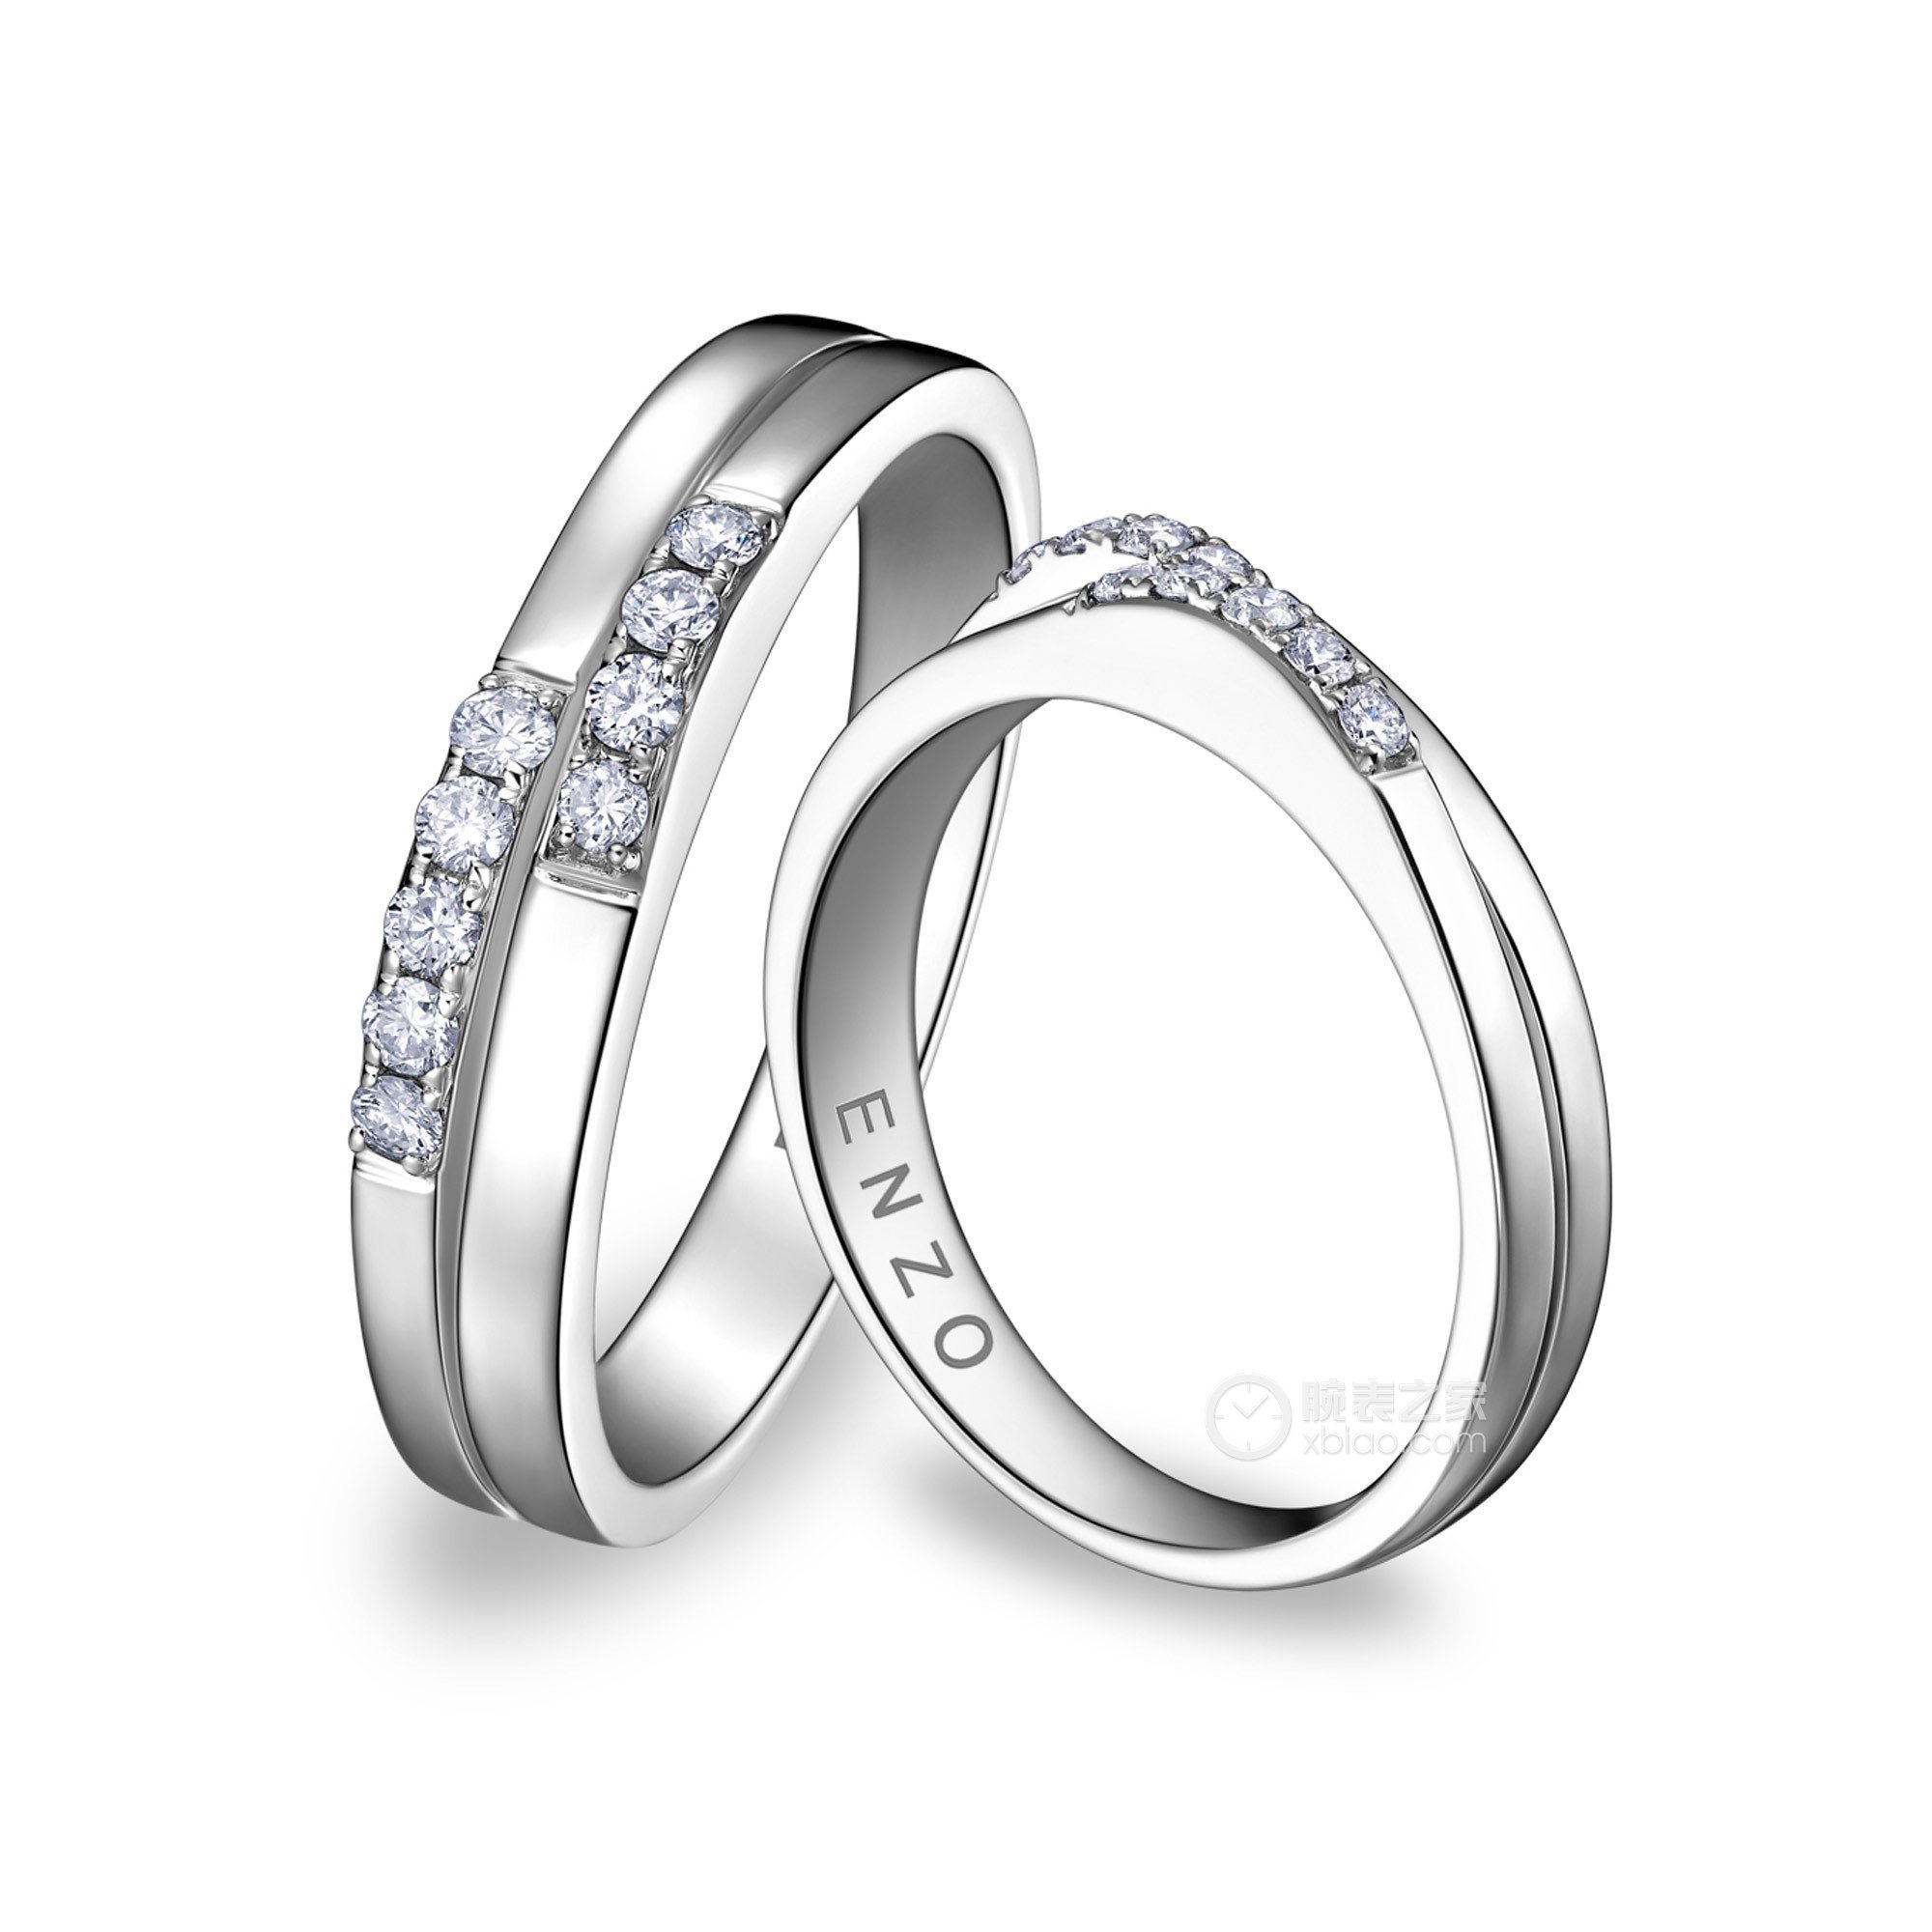 enzo婚礼系列18k白金钻石对戒戒指13